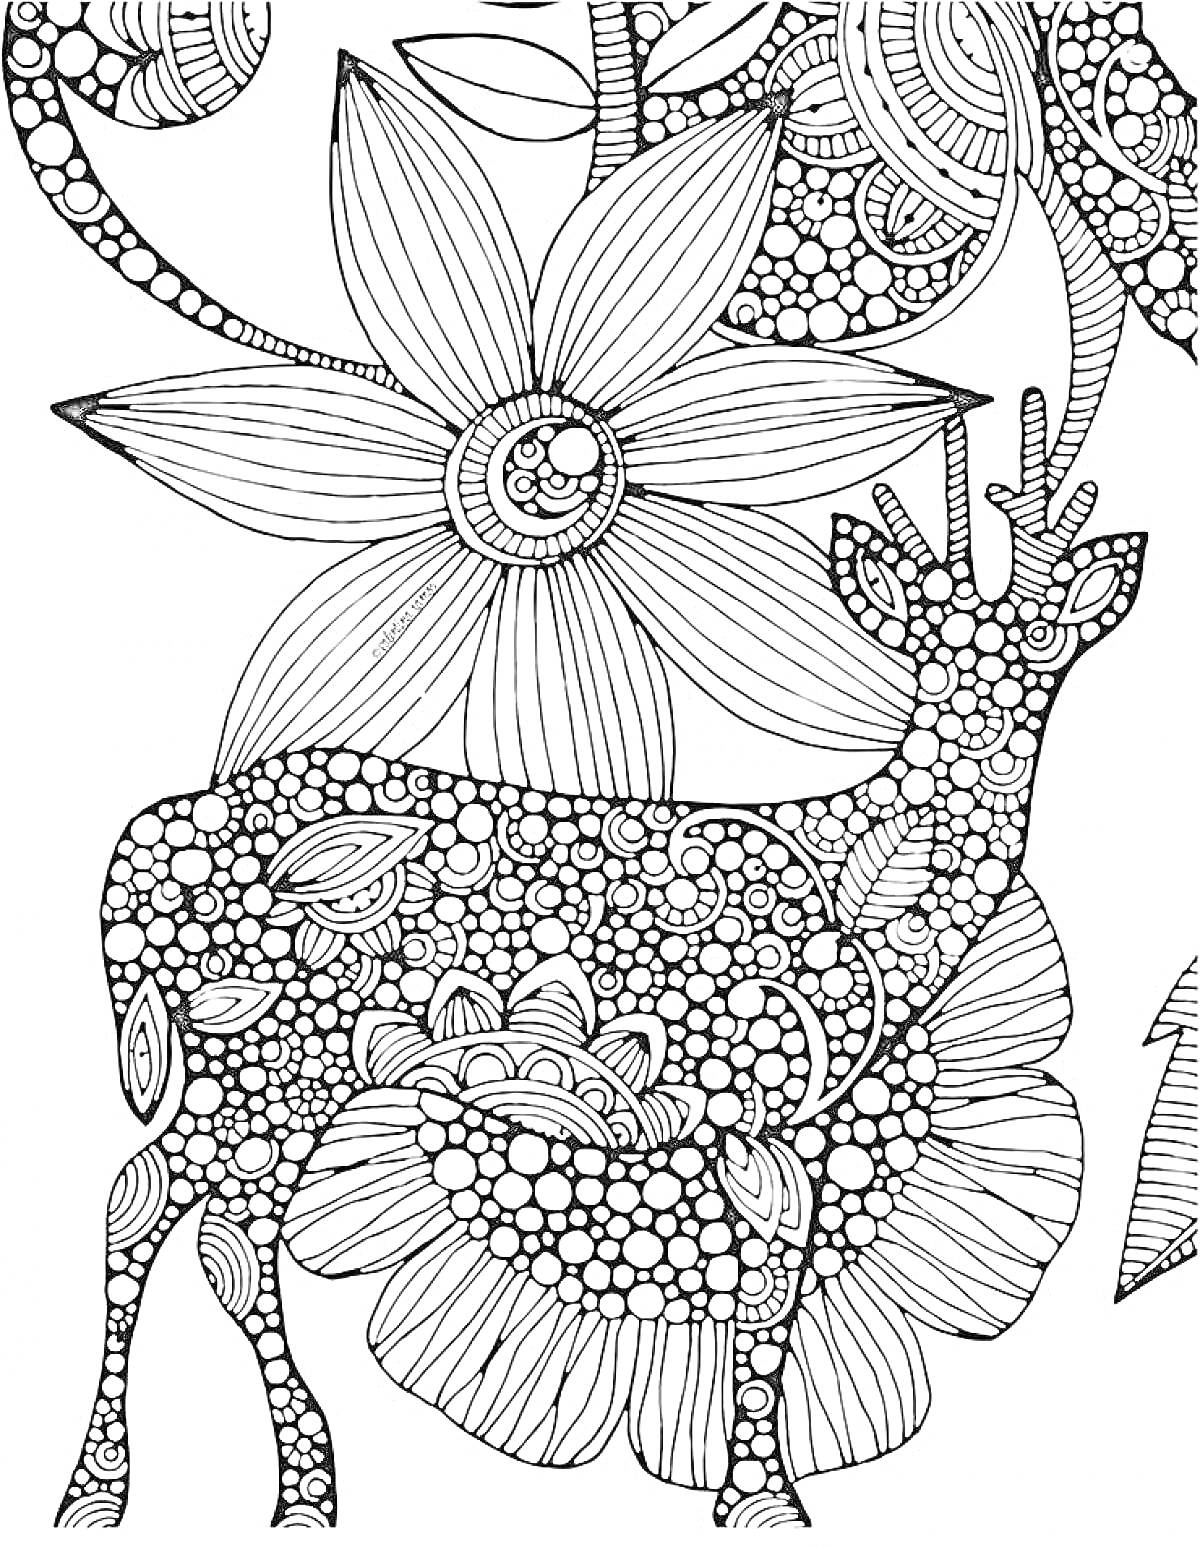 Раскраска Олень и крупный цветок с узорами